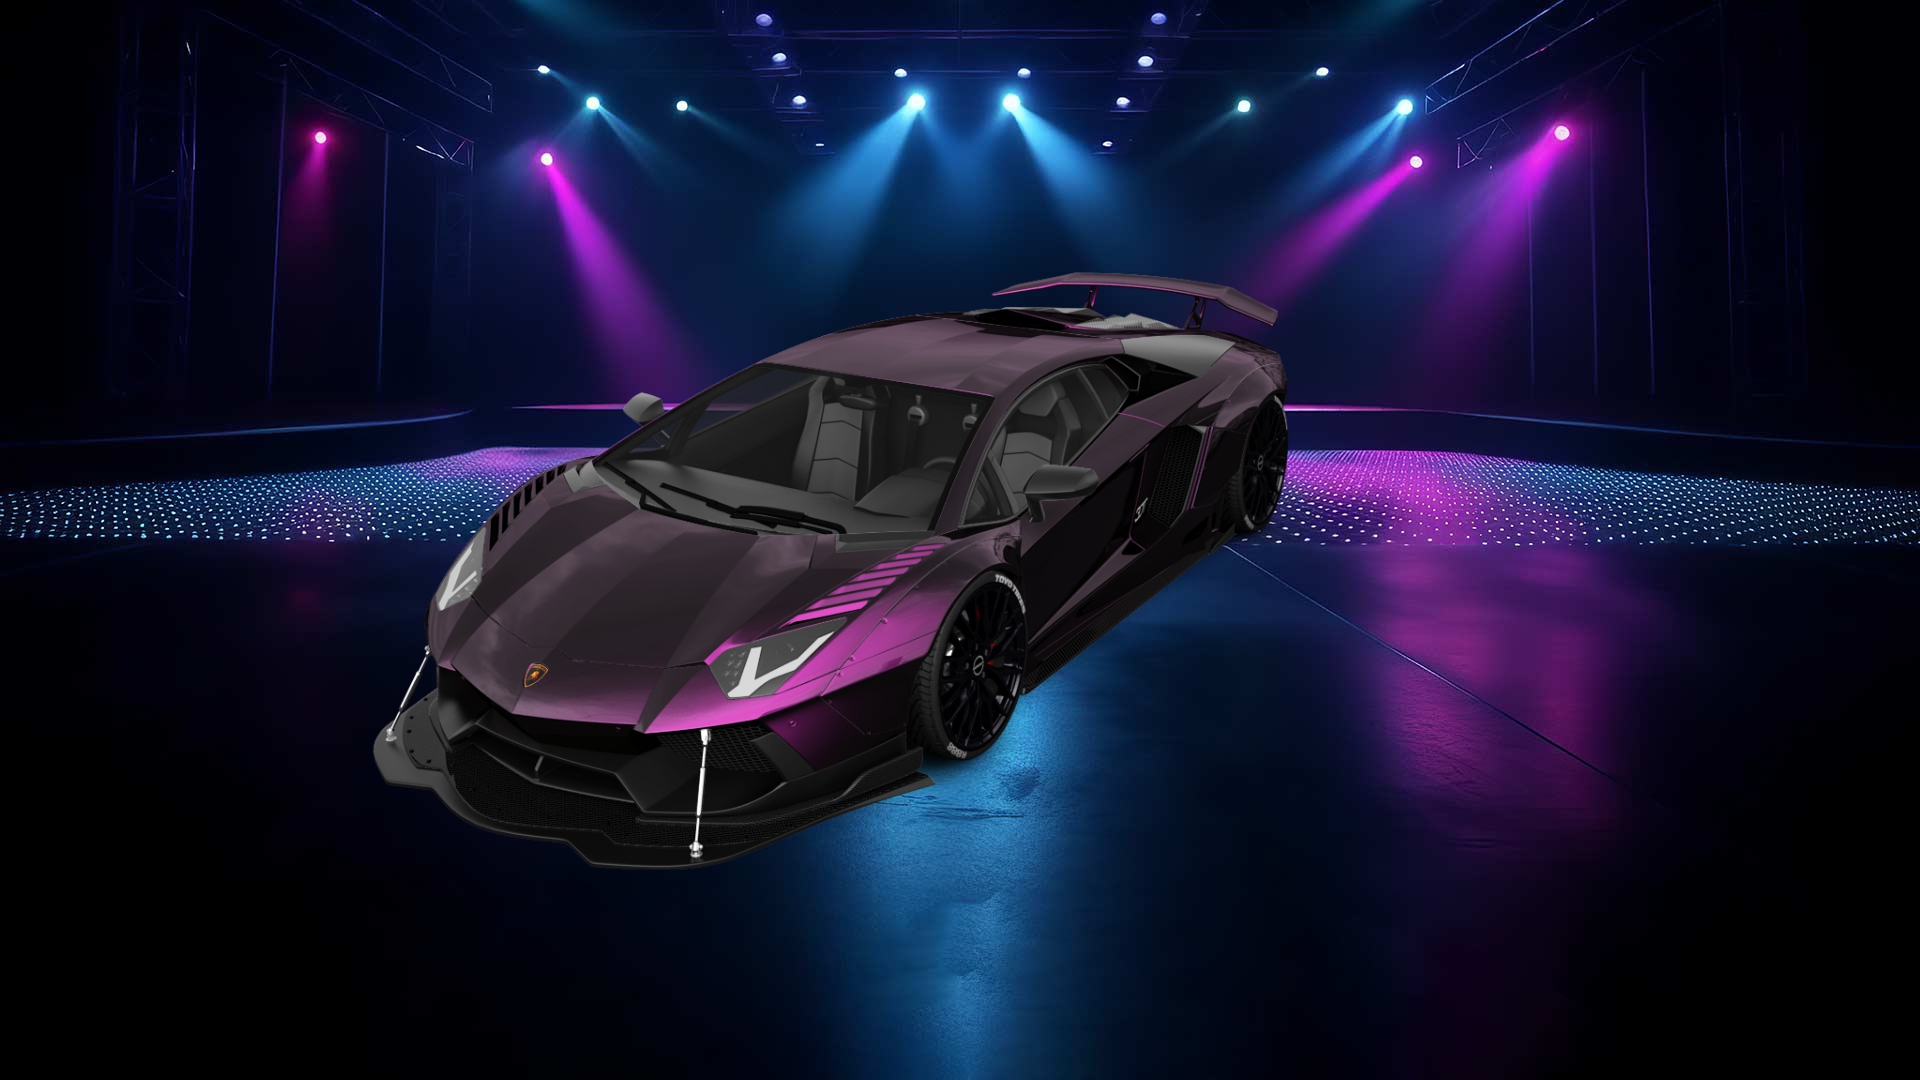 Lamborghini Aventador 2 Door Coupe 2012 tuning